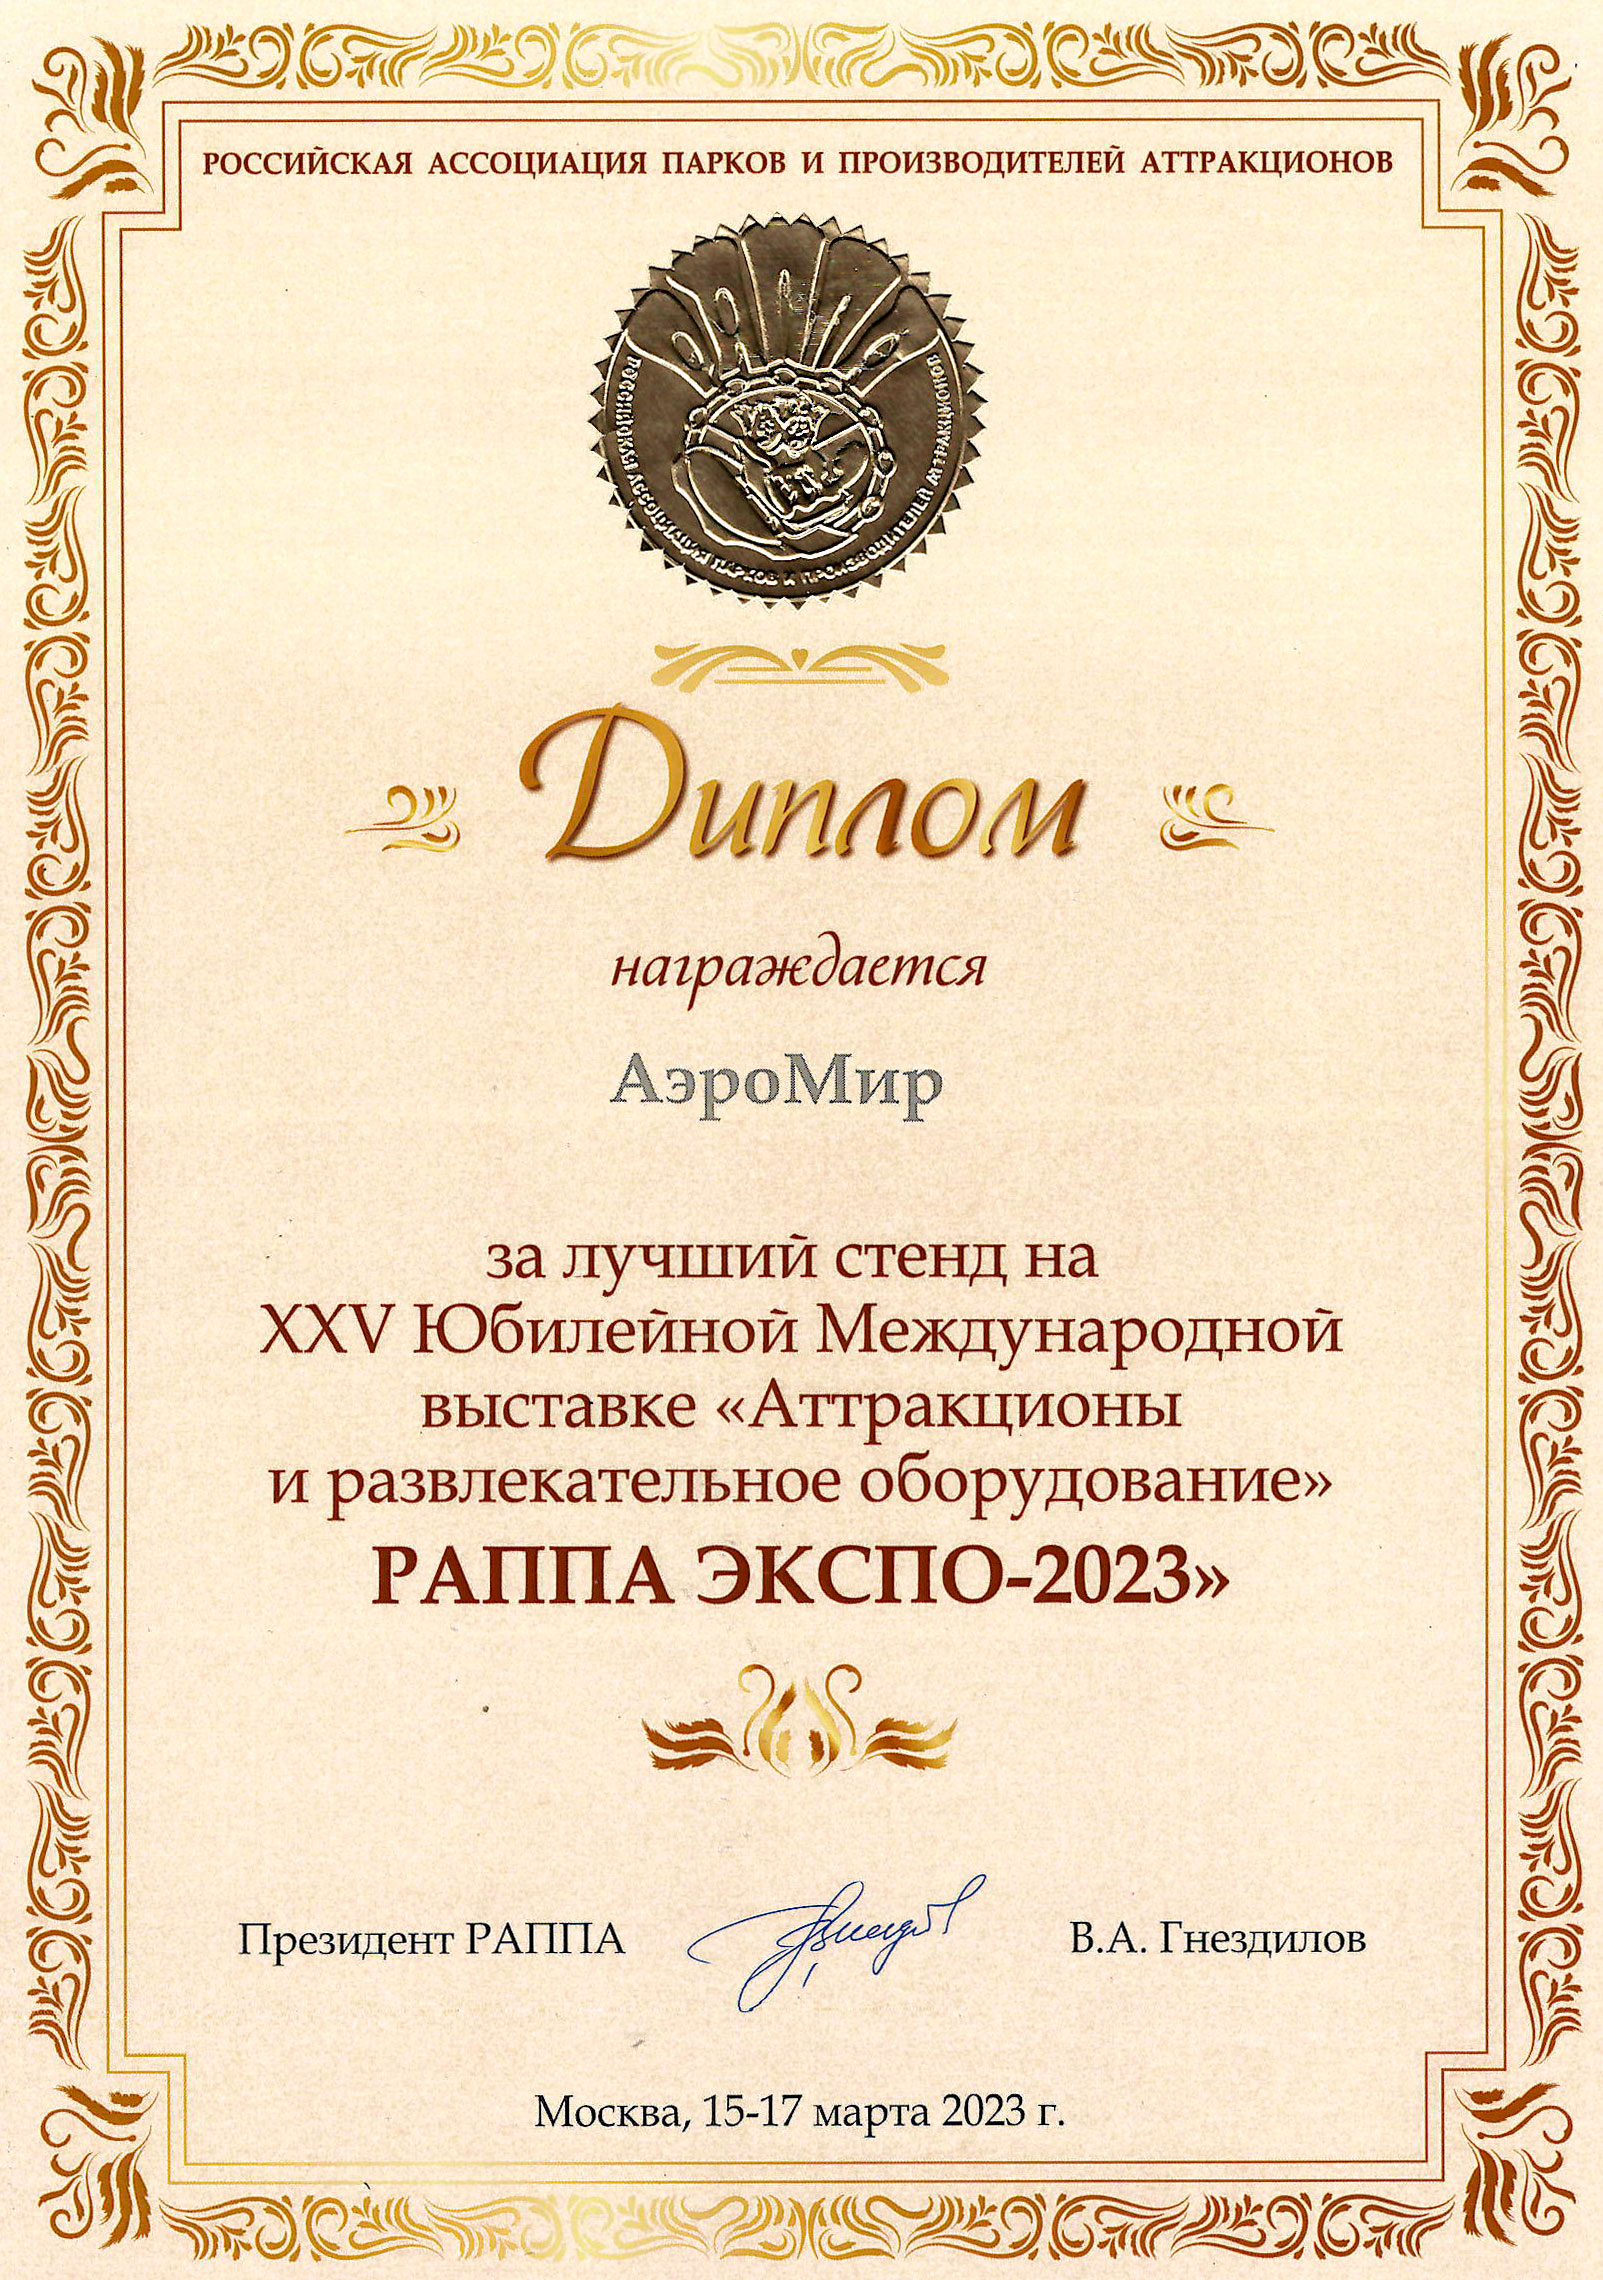 РАППА ЭКСПО-2023 ВЕСНА золотой диплом